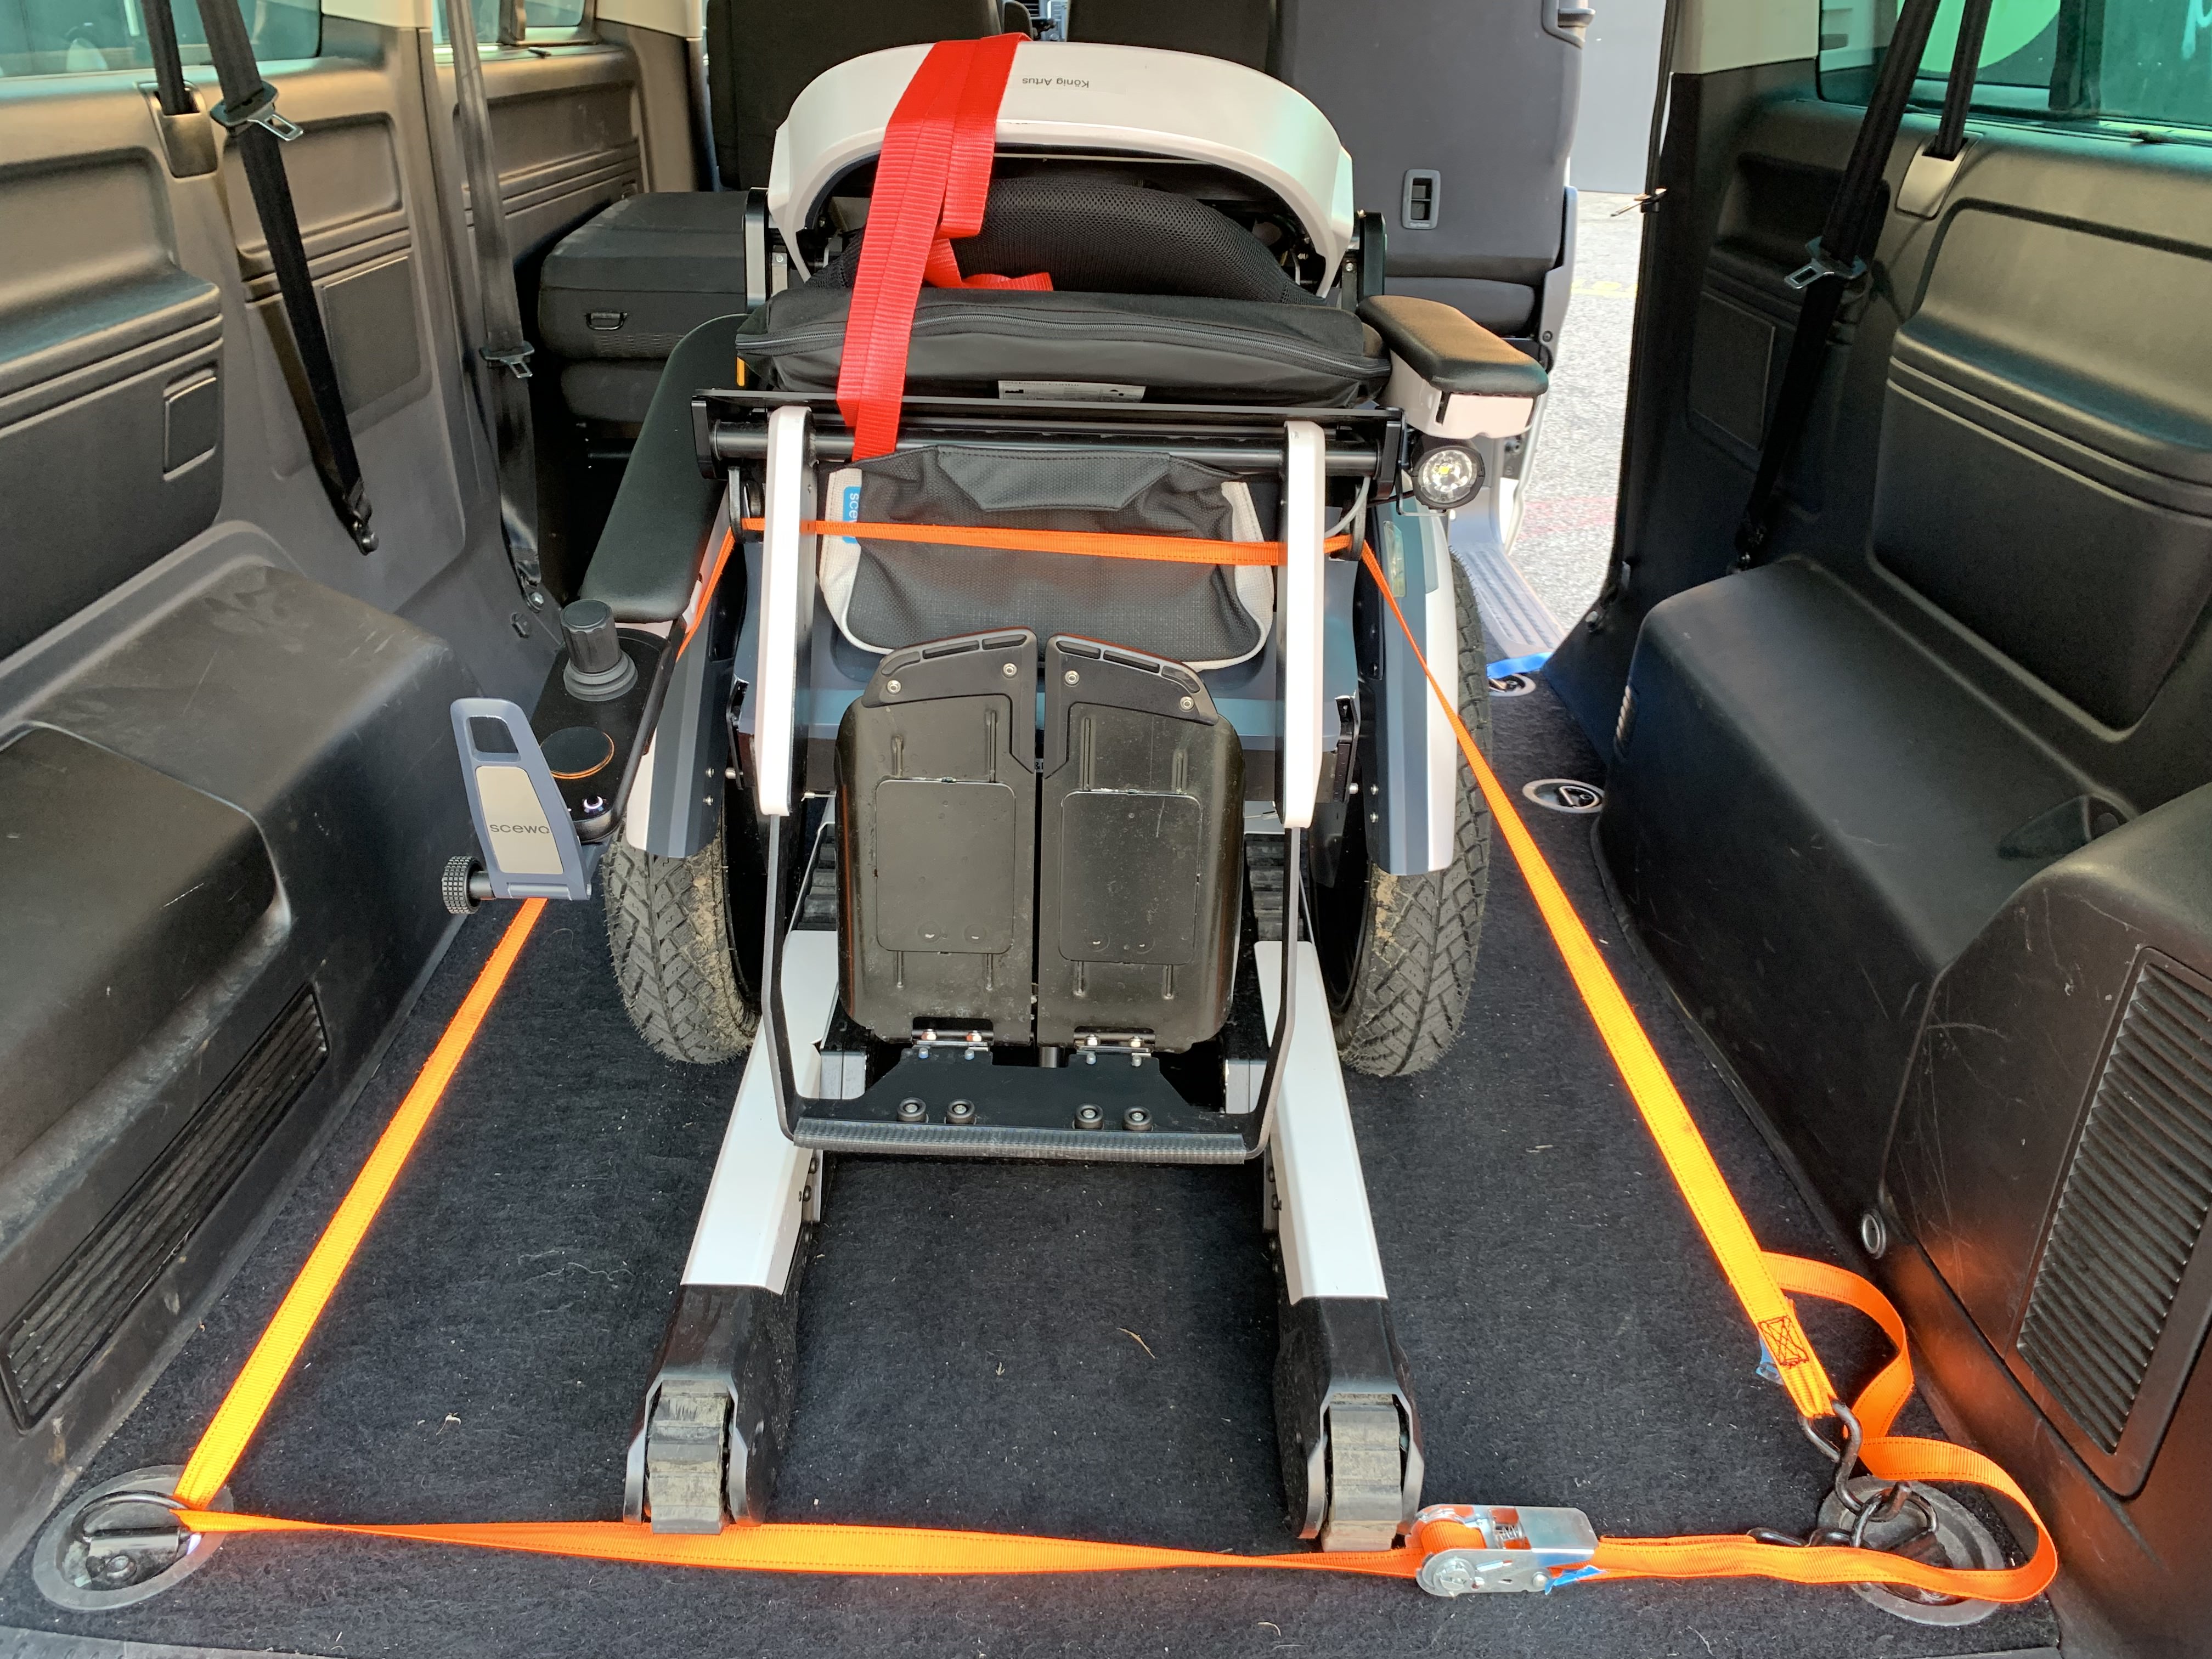 Fixation recommandée du fauteuil roulant BROV1.1